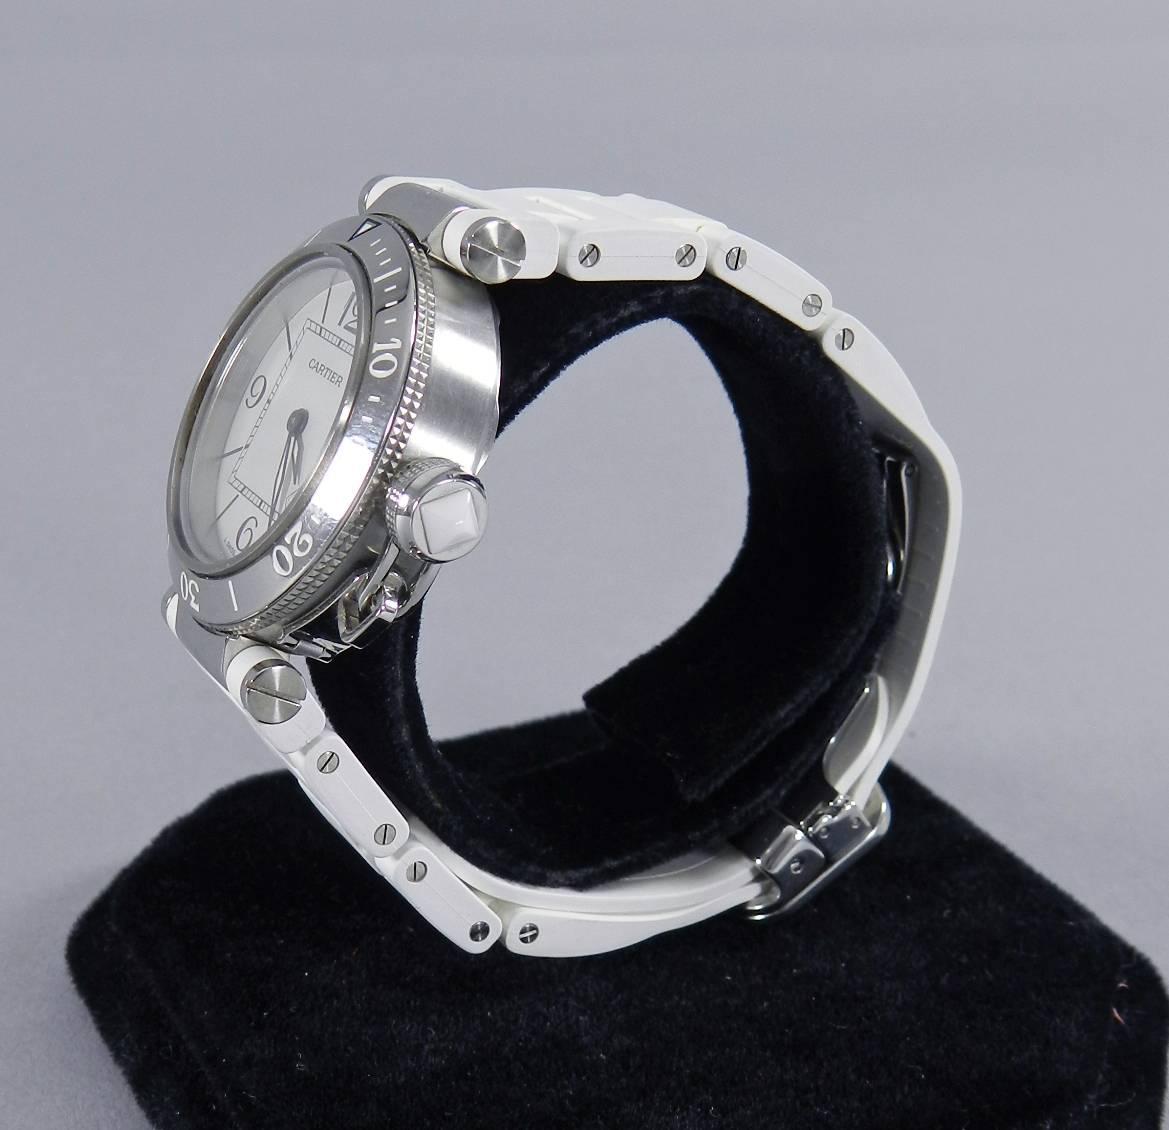 Cartier Lady's Stainless Steel Pasha Seatimer Quartz Wristwatch Ref W314002 1